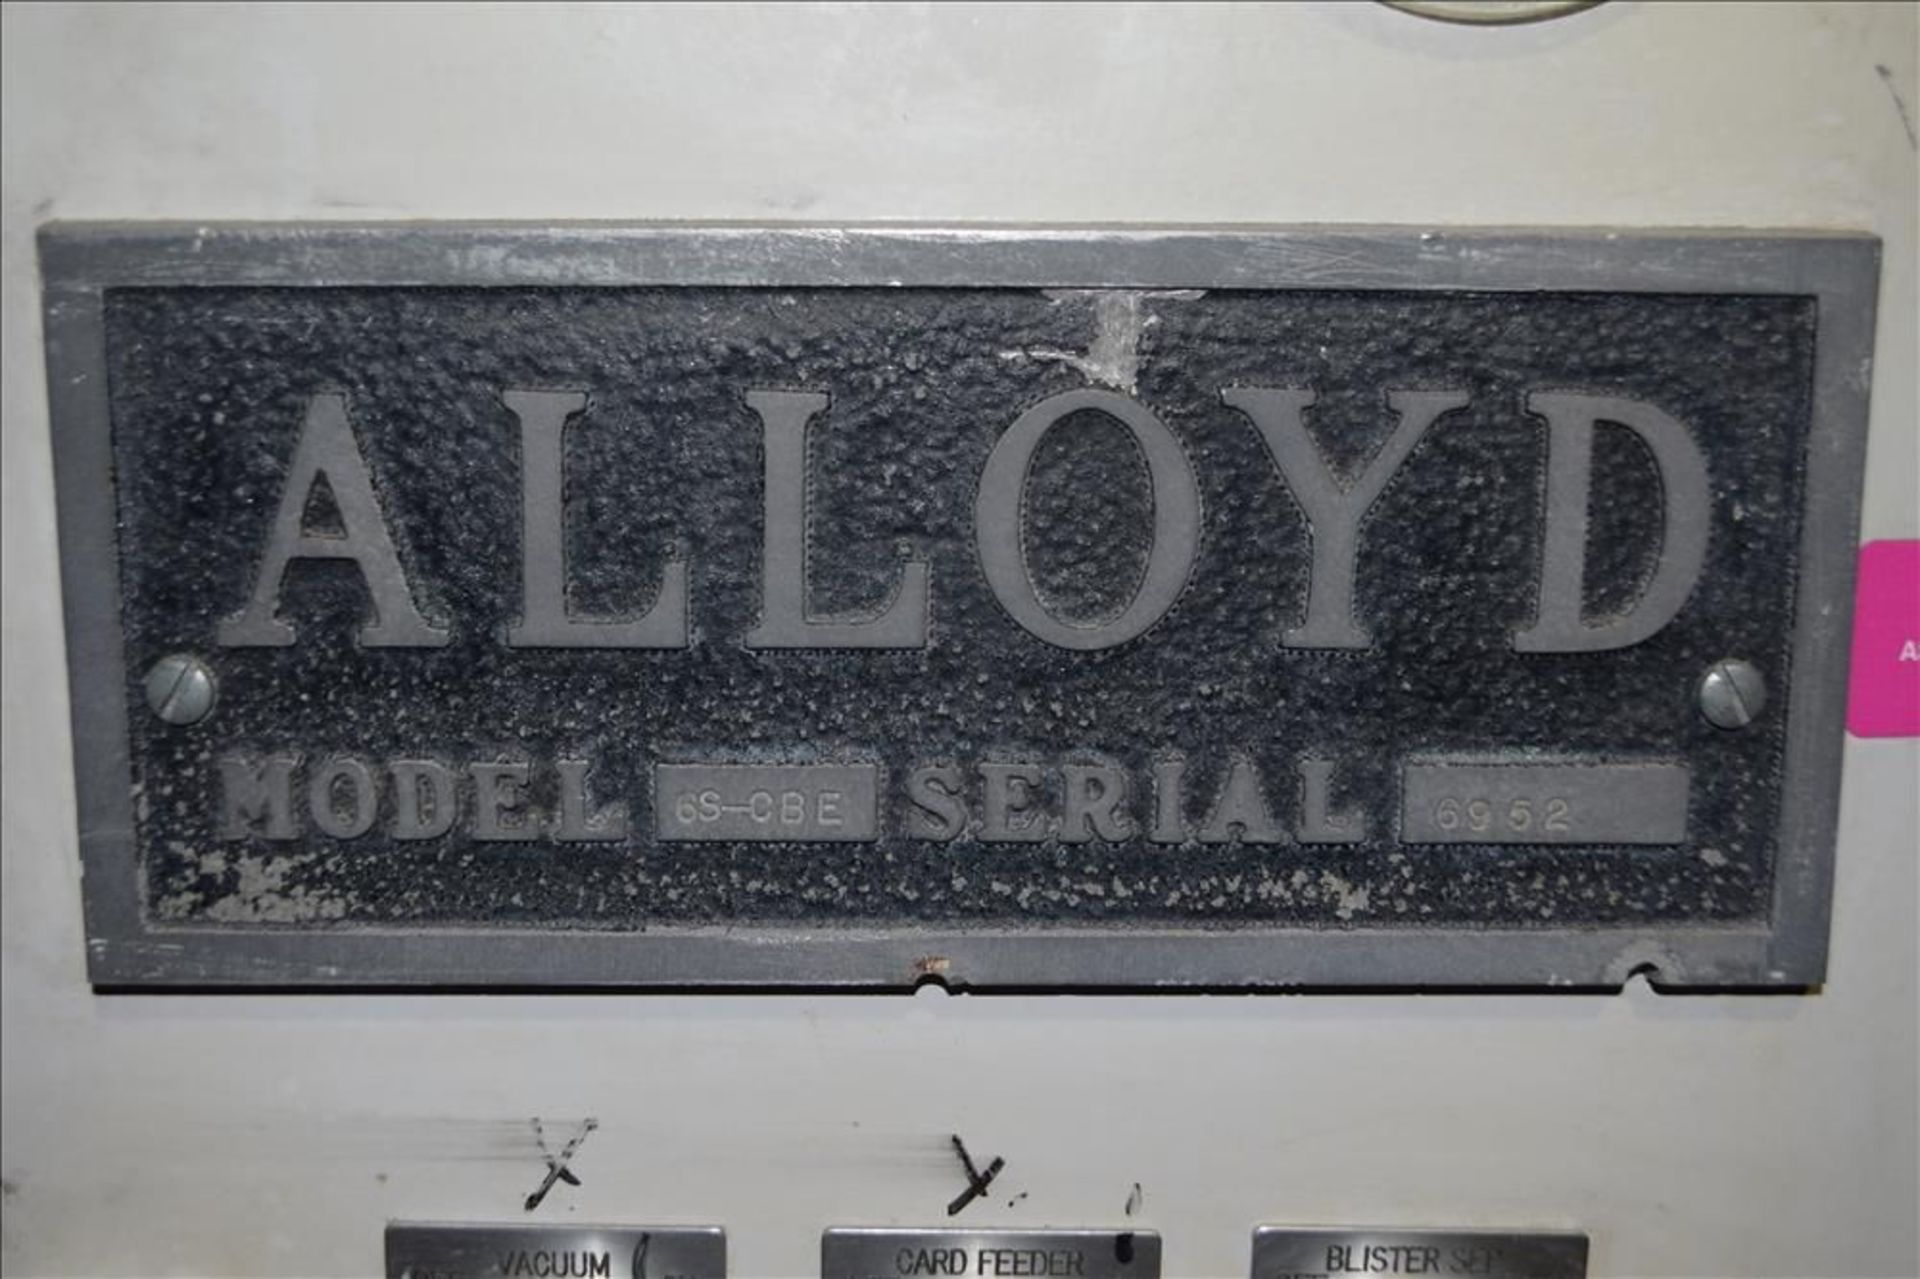 Alloyd Model 6S-CBE Rotary Blister Sealer - Image 6 of 6